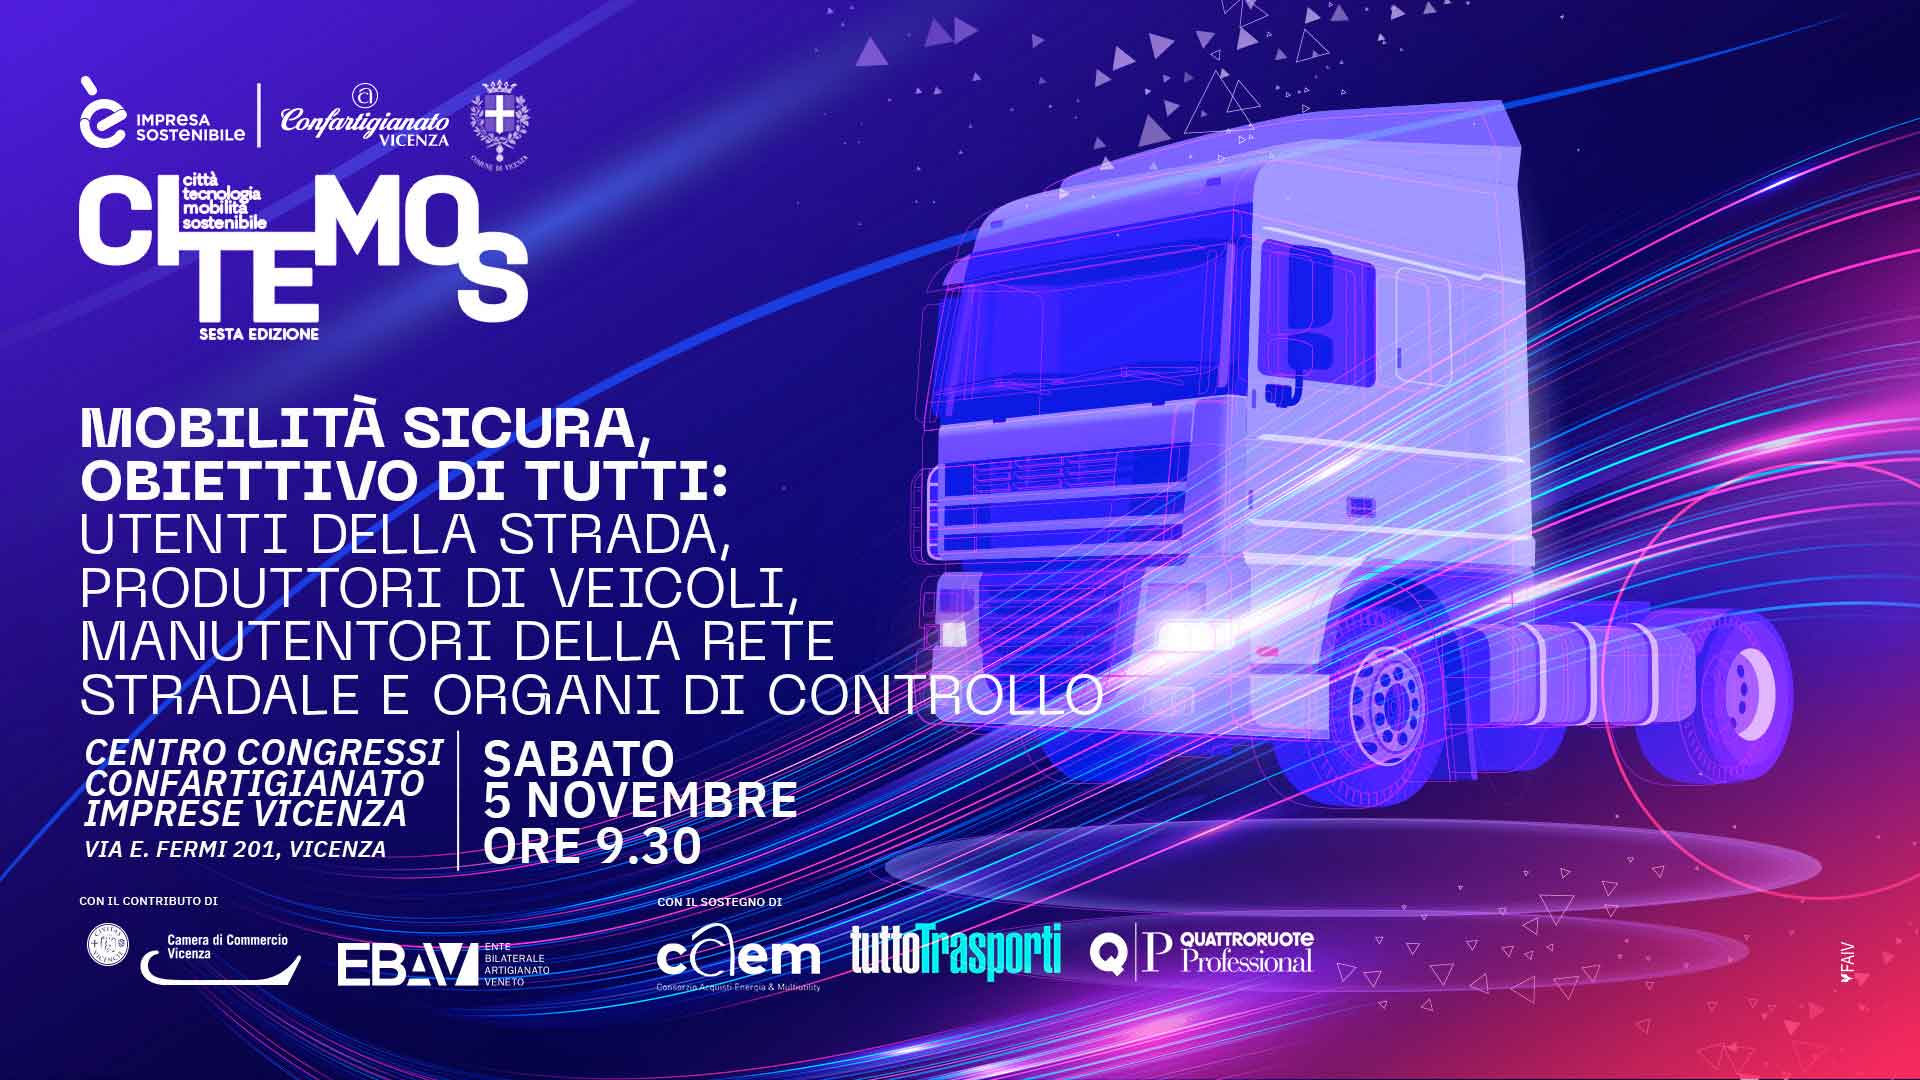 AUTOTRASPORTO – Festival CI.TE.MO.S. 2022: a Vicenza il convegno "Mobilità sicura, obiettivo di tutti", sabato 5 novembre